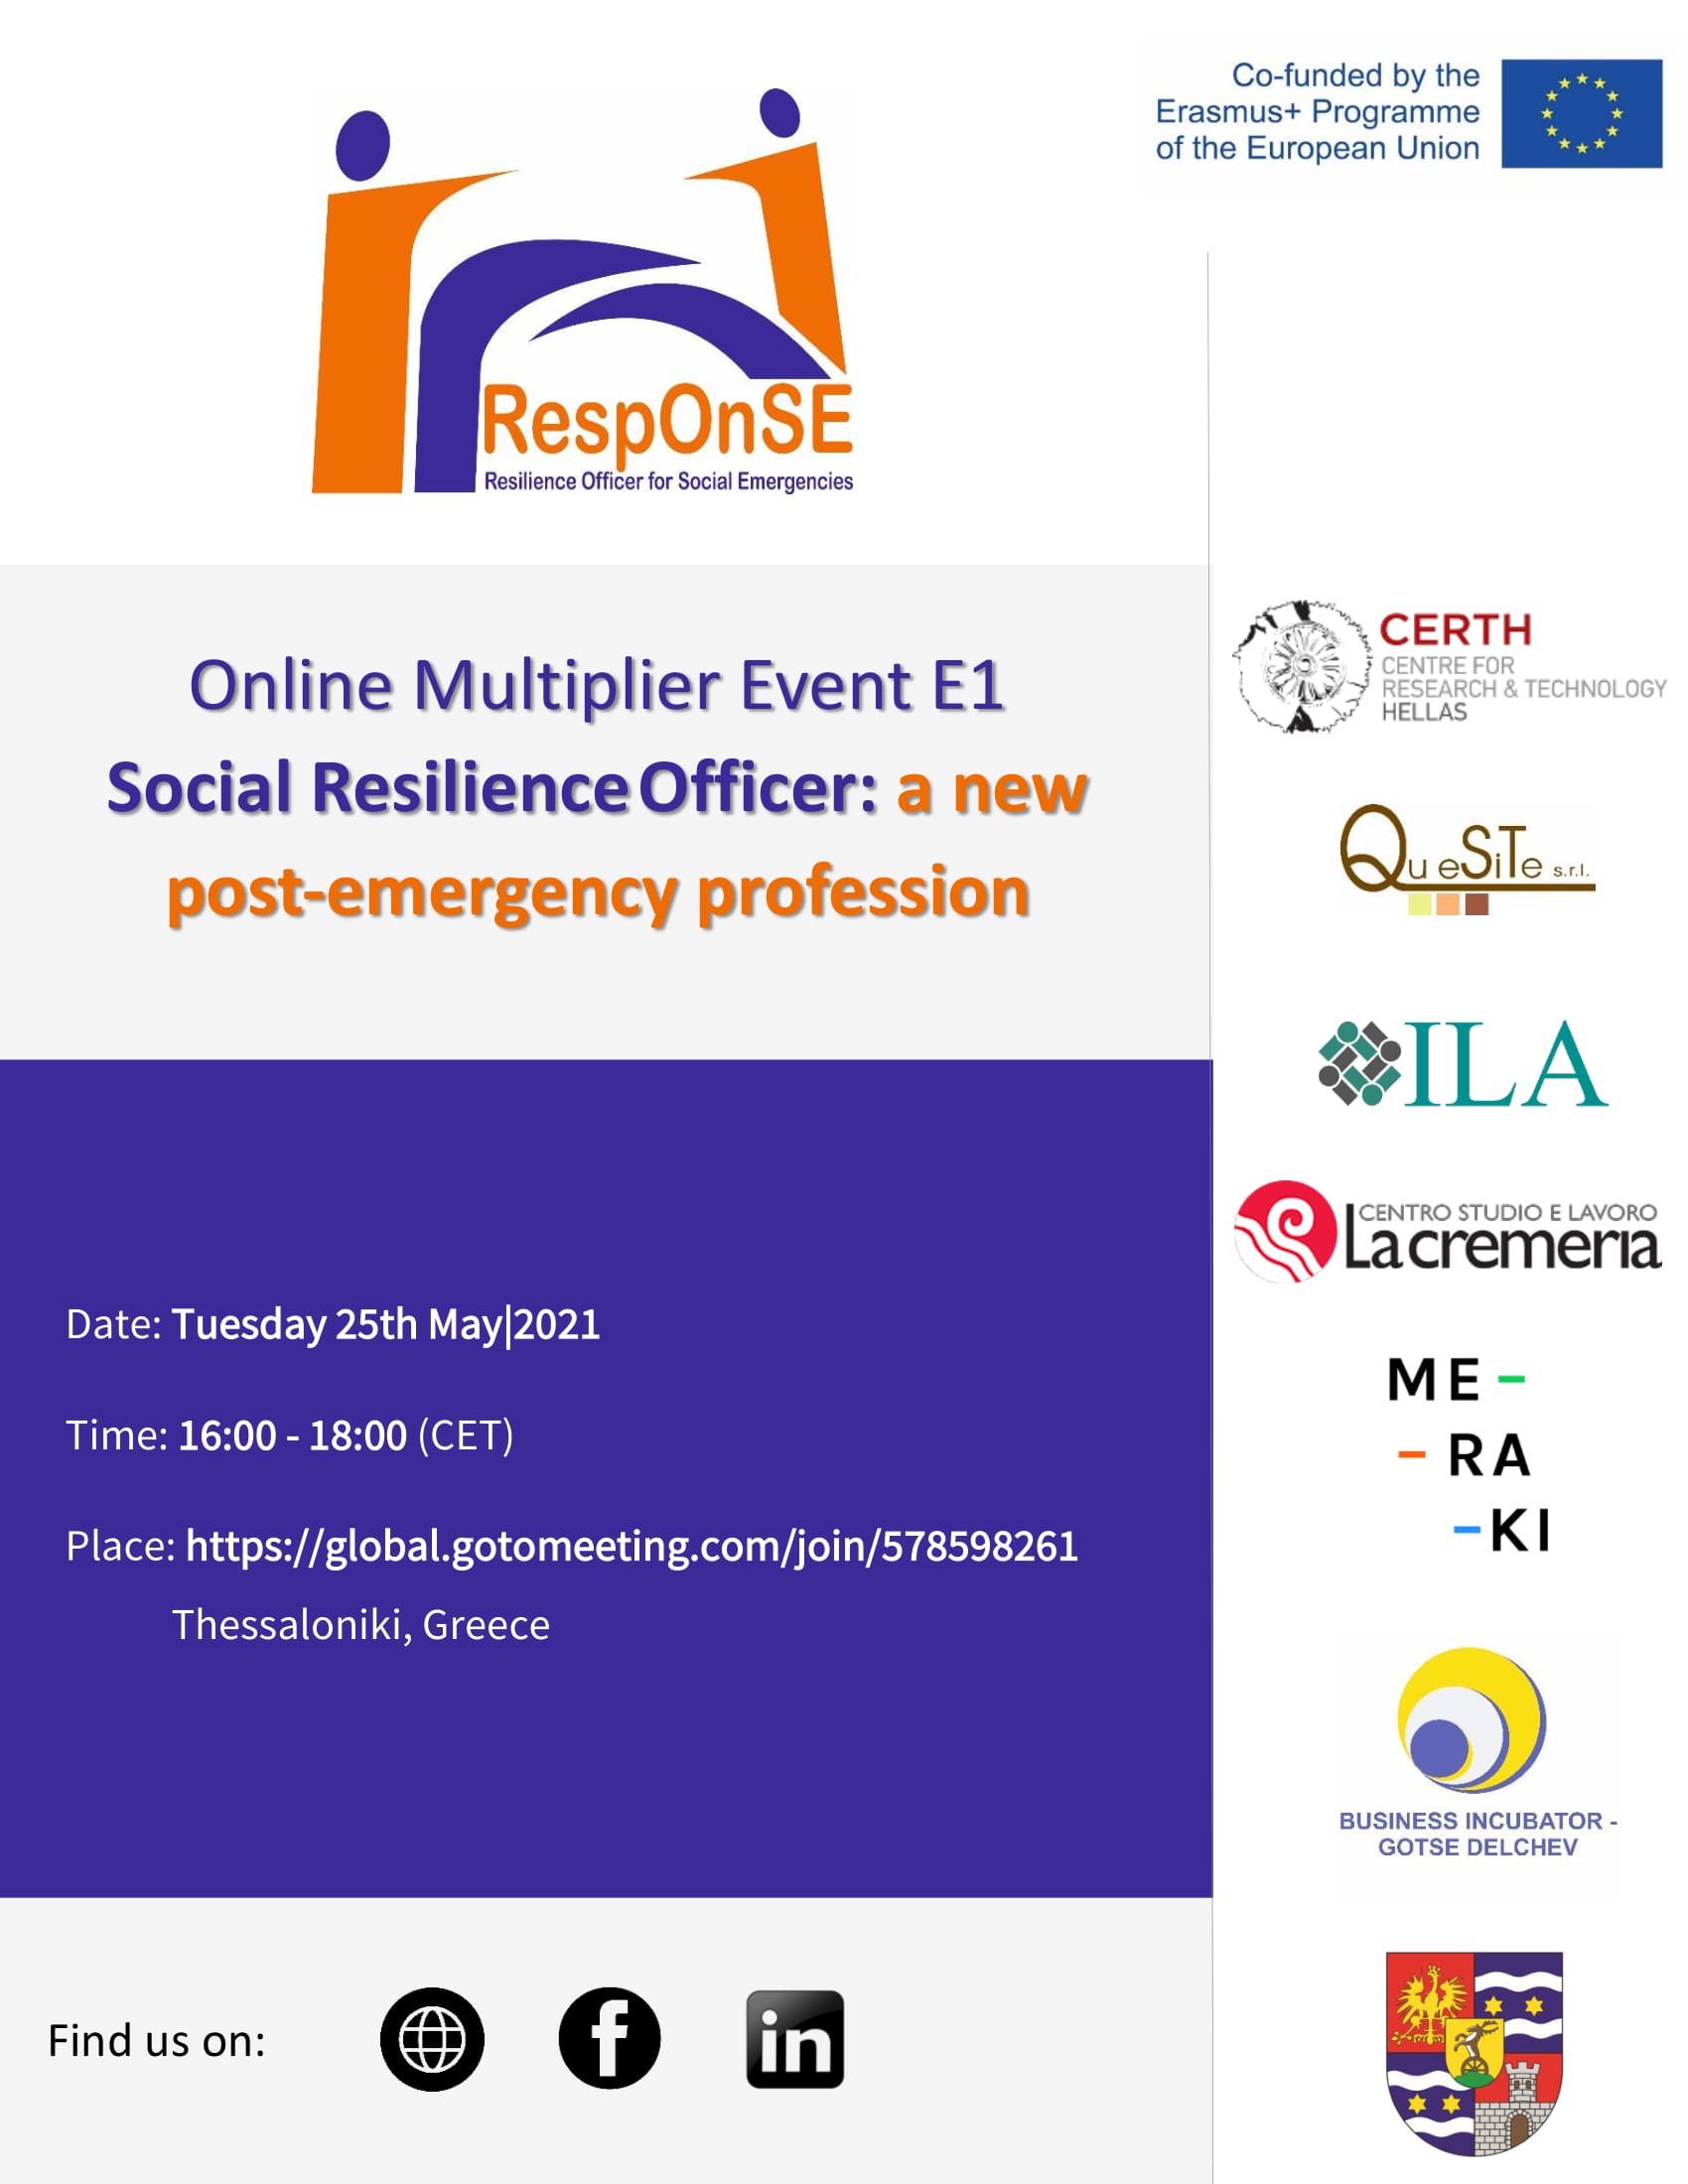 Οnline event within the research project "Response", entitled: "Social Resilience Officer: a new post-emergency profession 